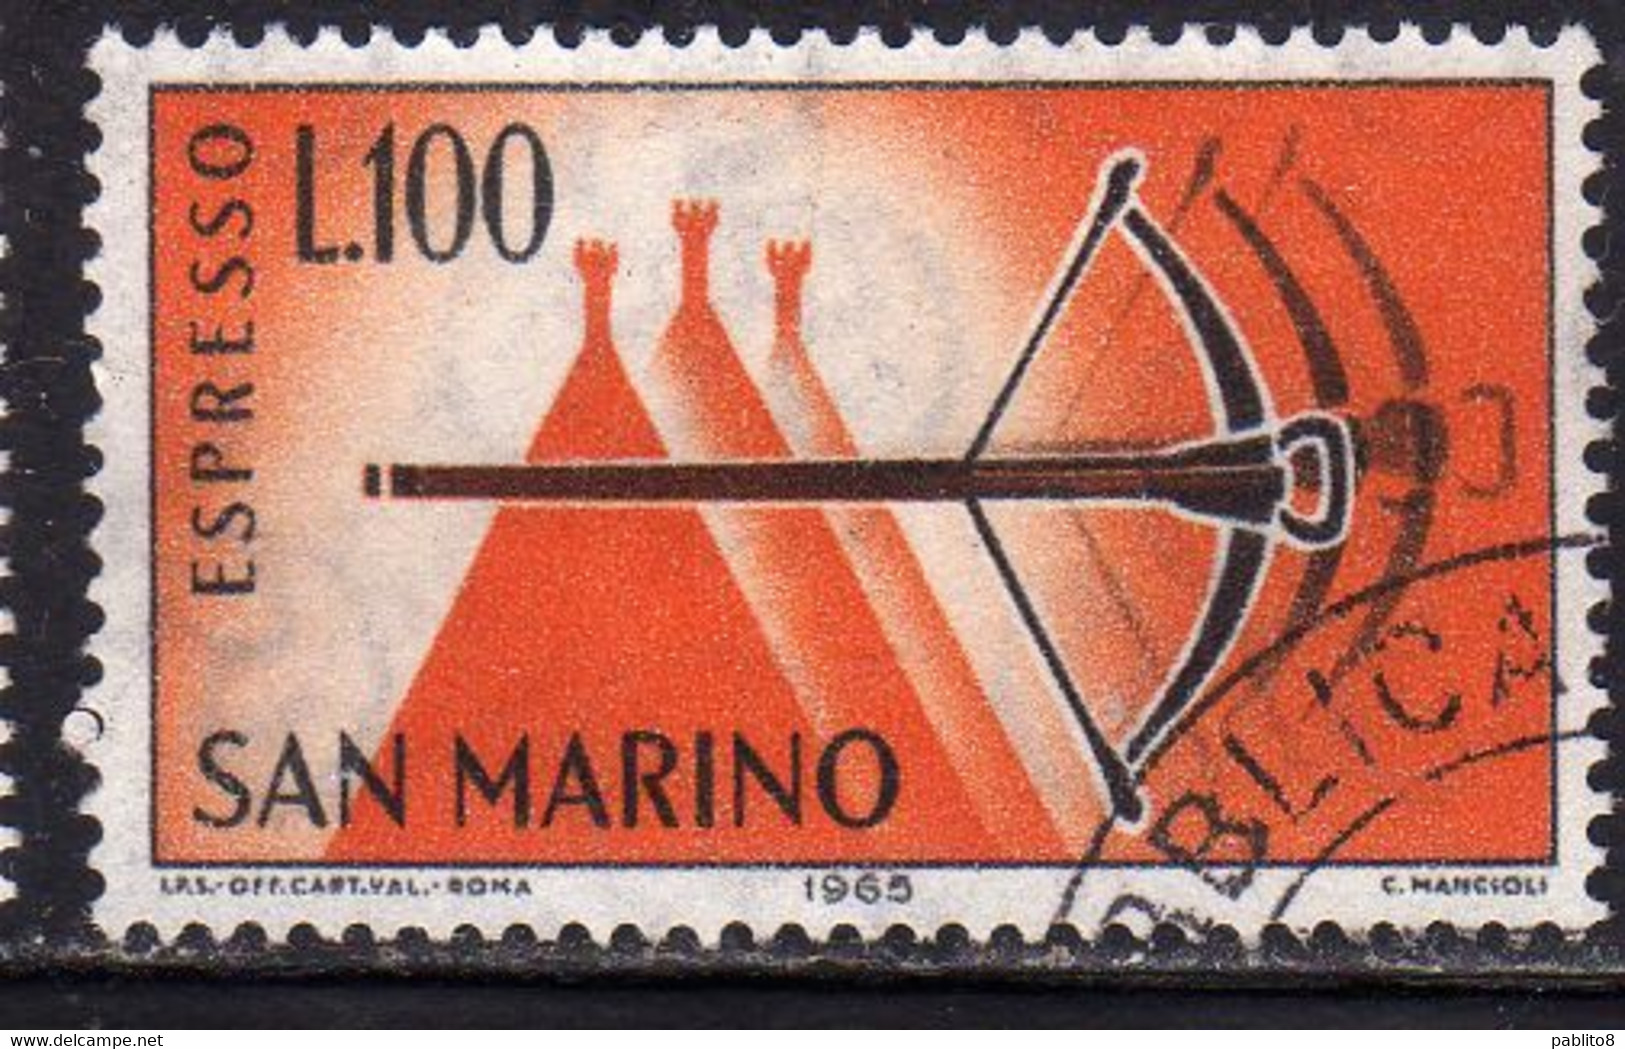 REPUBBLICA DI SAN MARINO 1966 ESPRESSI SPECIAL DELIVERY ESPRESSO BALESTRA LIRE 100 USATO USED OBLITERE' - Express Letter Stamps